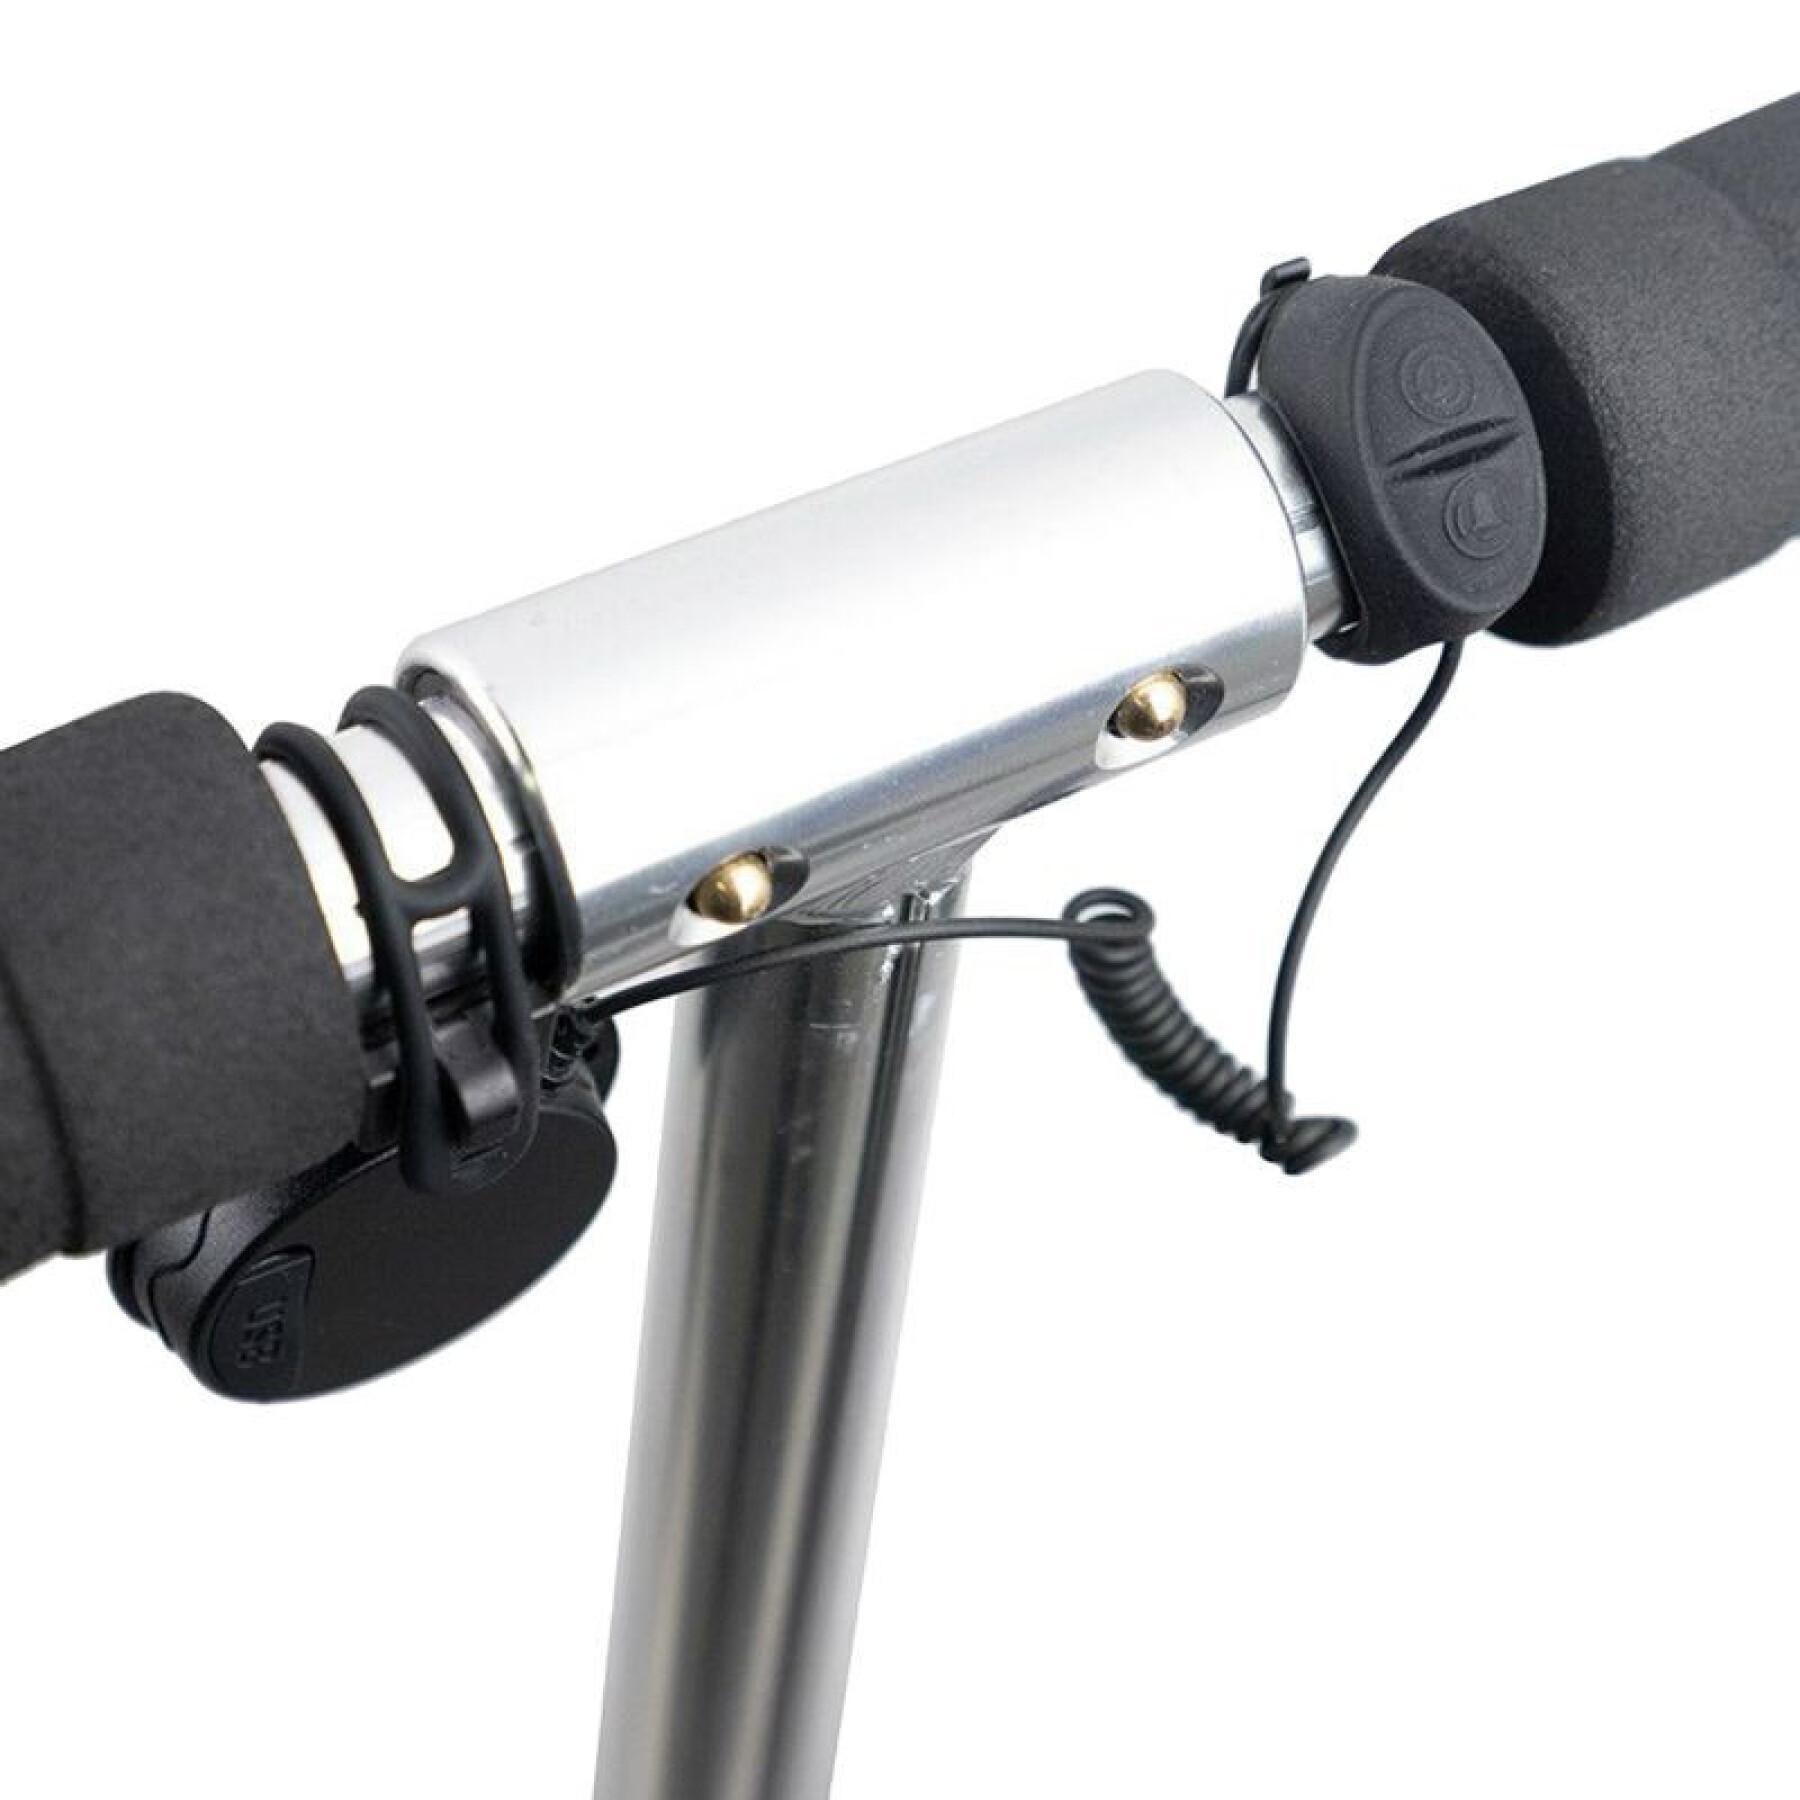 Dzwonek - klakson rowerowy - hulajnoga elektroniczna ładowana przez usb - 4 dźwięki 110-120 decybeli dziecko P2R